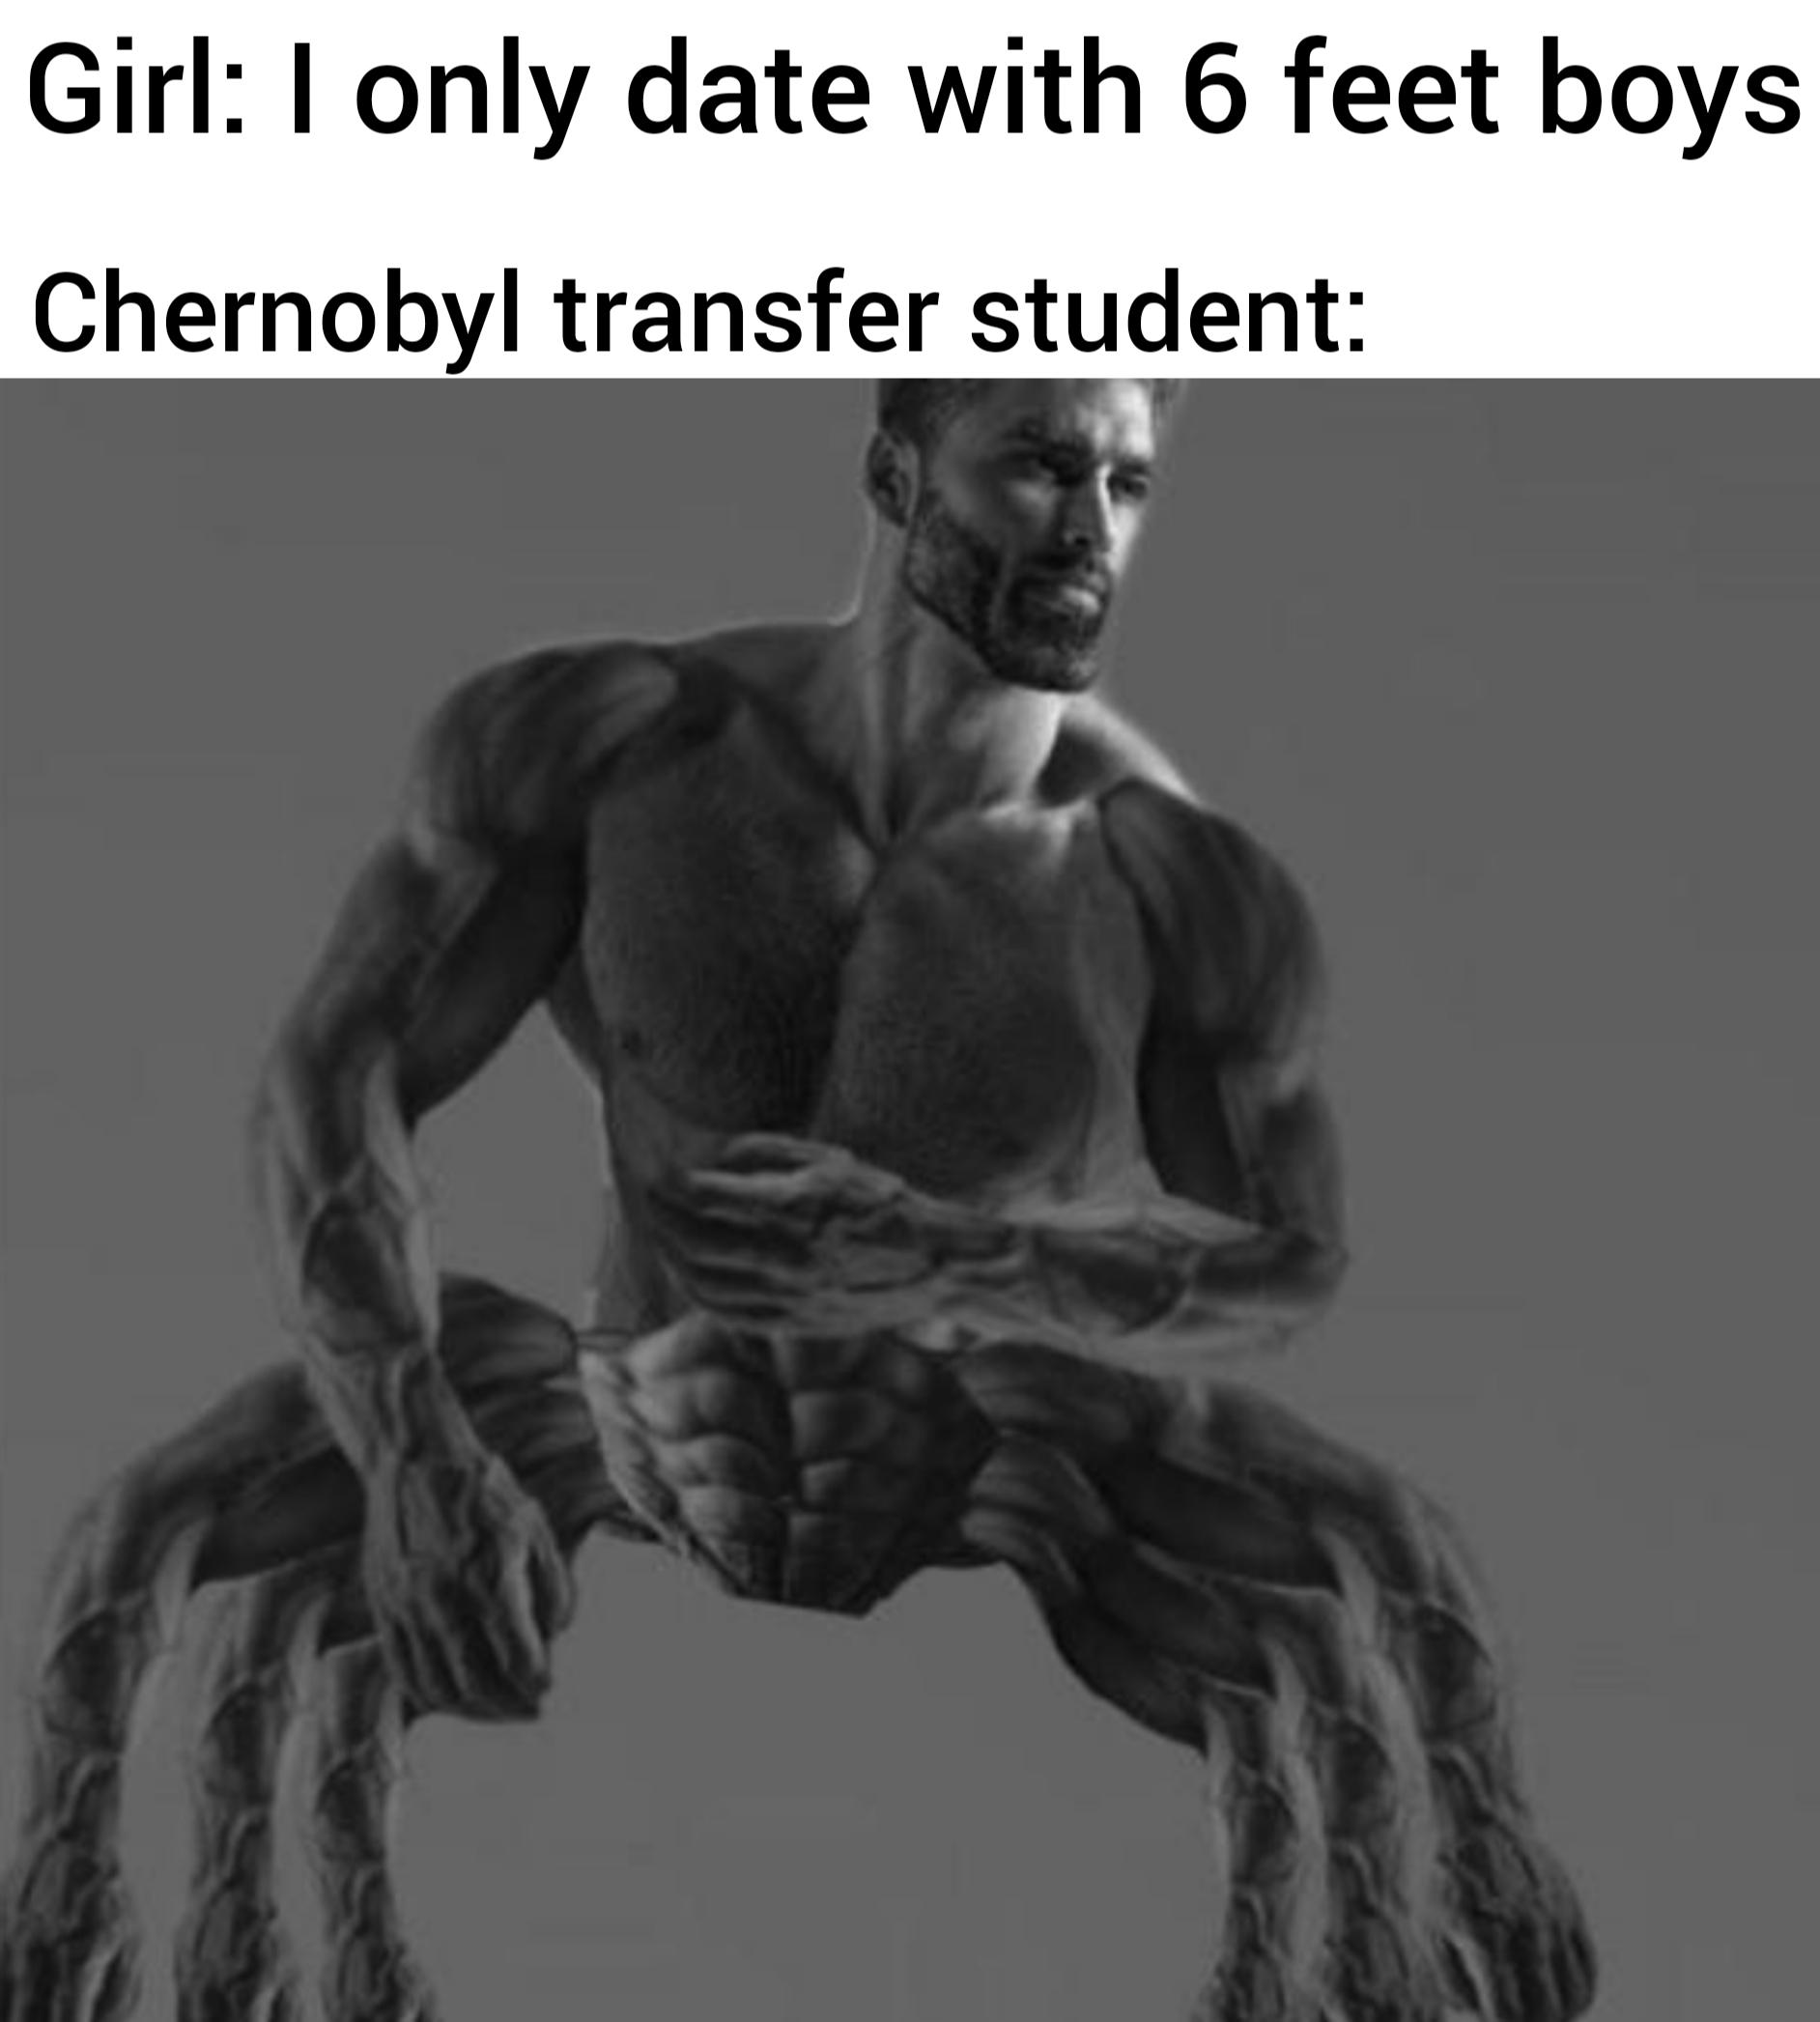 funny memes - dank memes - giga chad meme ernest khalimov - Girl I only date with 6 feet boys Chernobyl transfer student